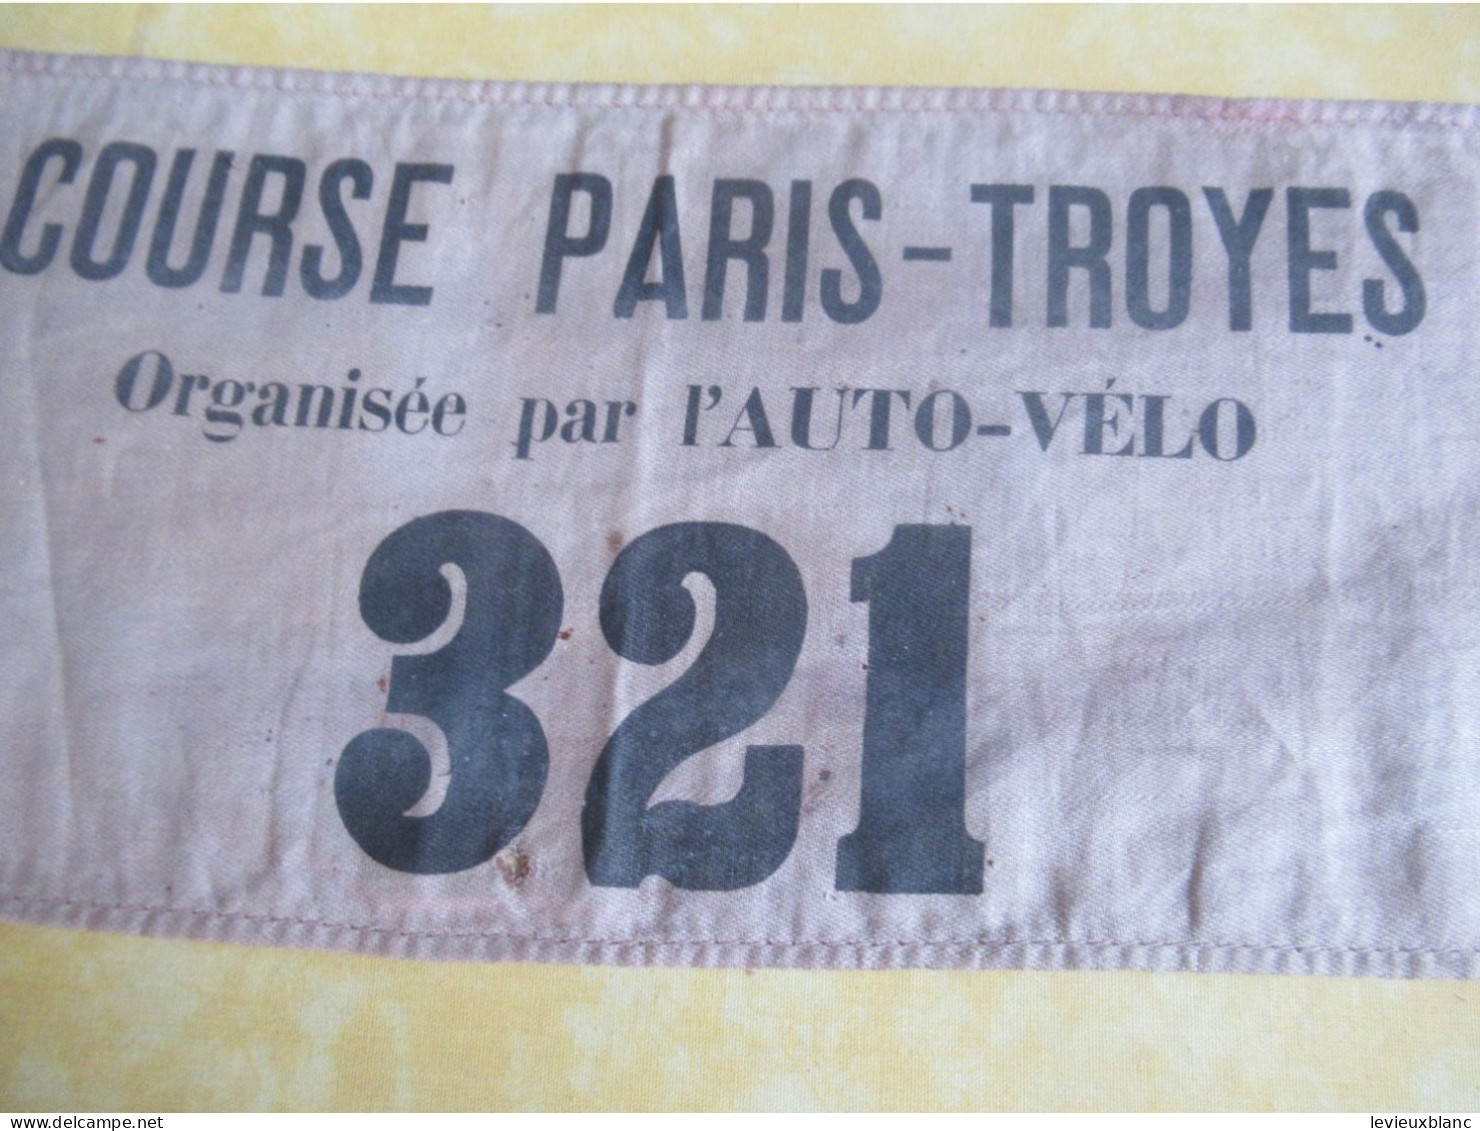 Course Cycliste Ancienne/3 Brassards D'Organisateur/Course Paris-Troyes/Organisée Par L'AUTO-VELO/entre 1900-1902  AC207 - Radsport